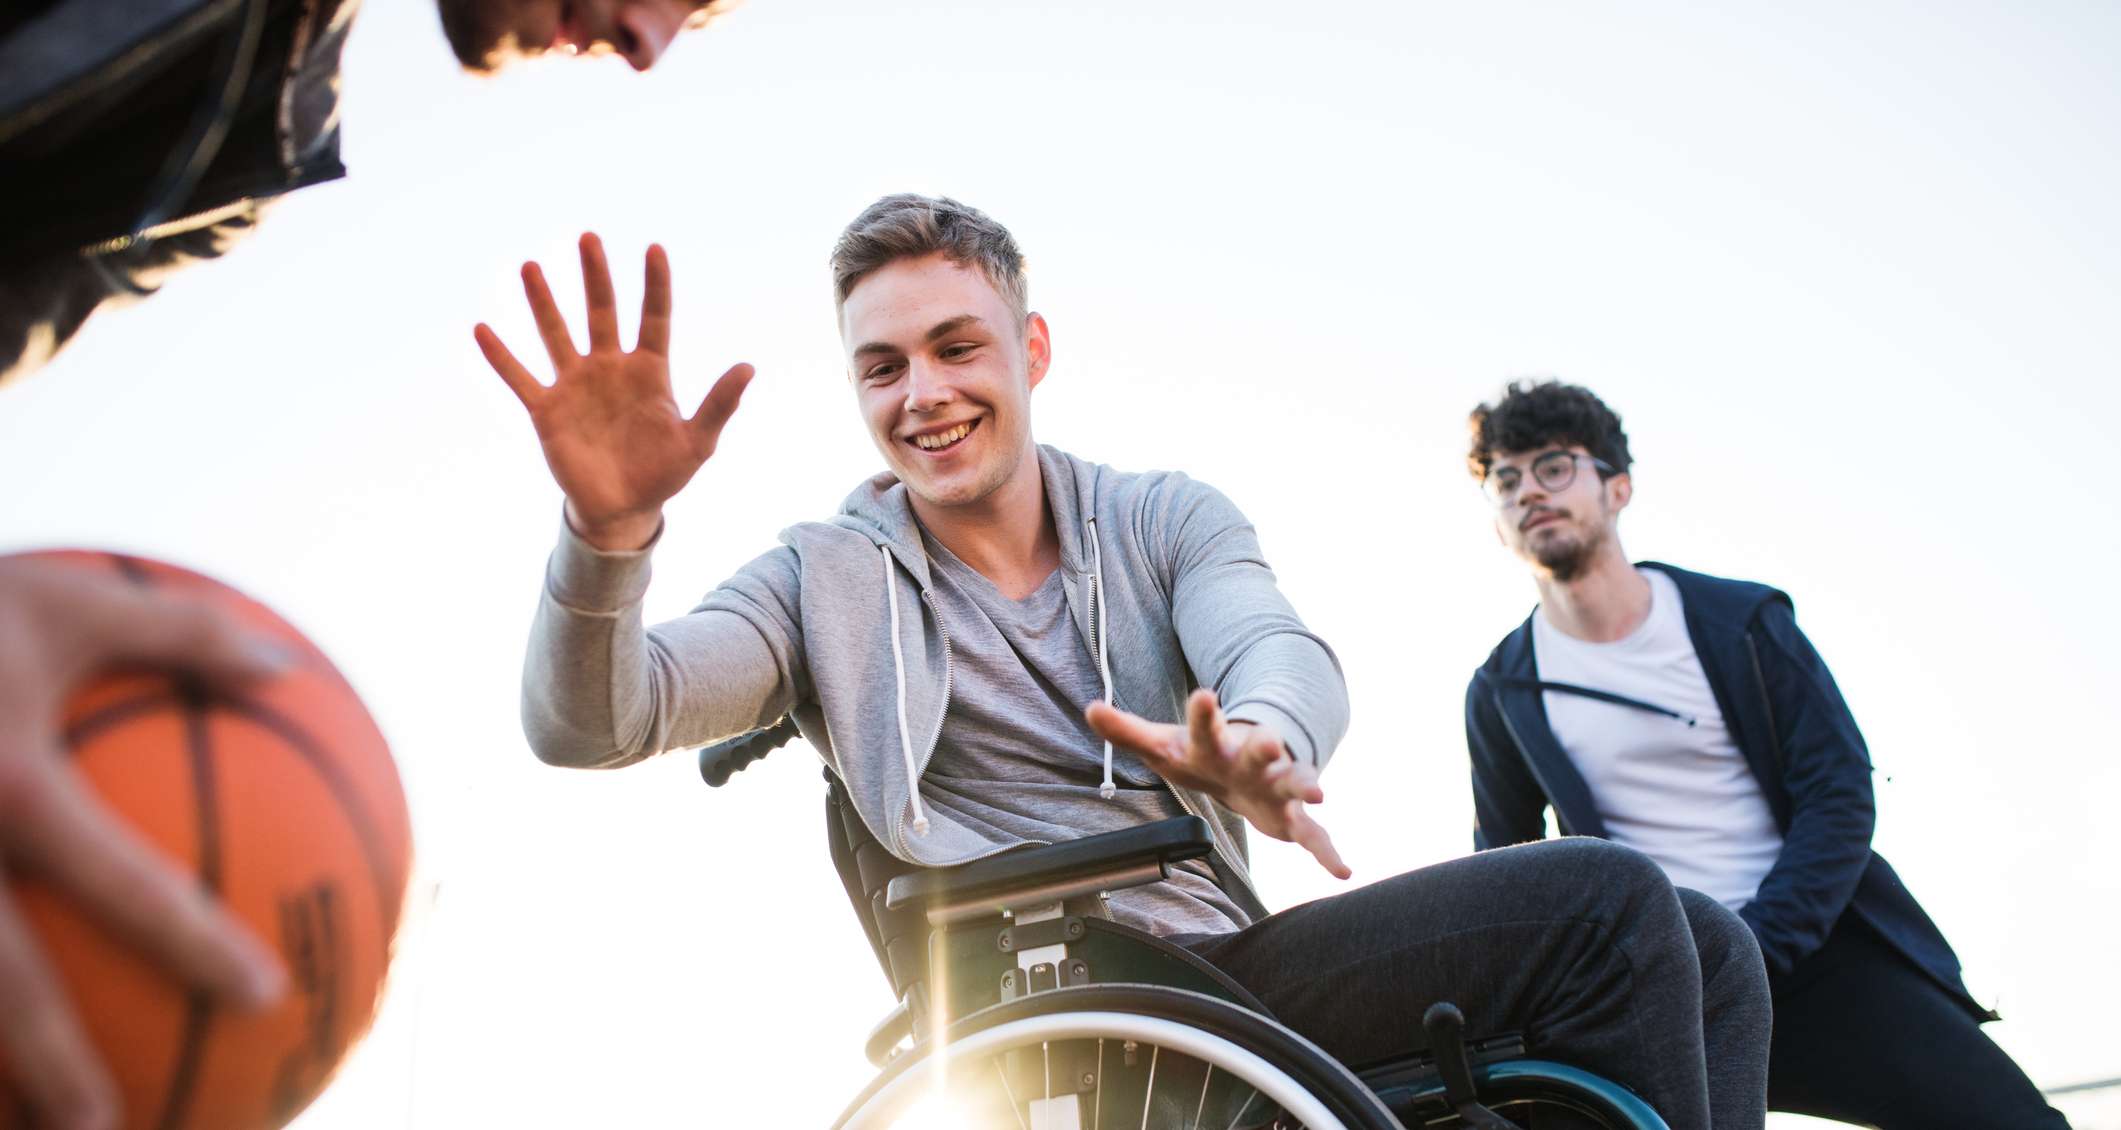 Allianz - Unfallversicherung Progression: Mann im Rollstuhl spielt Basketball